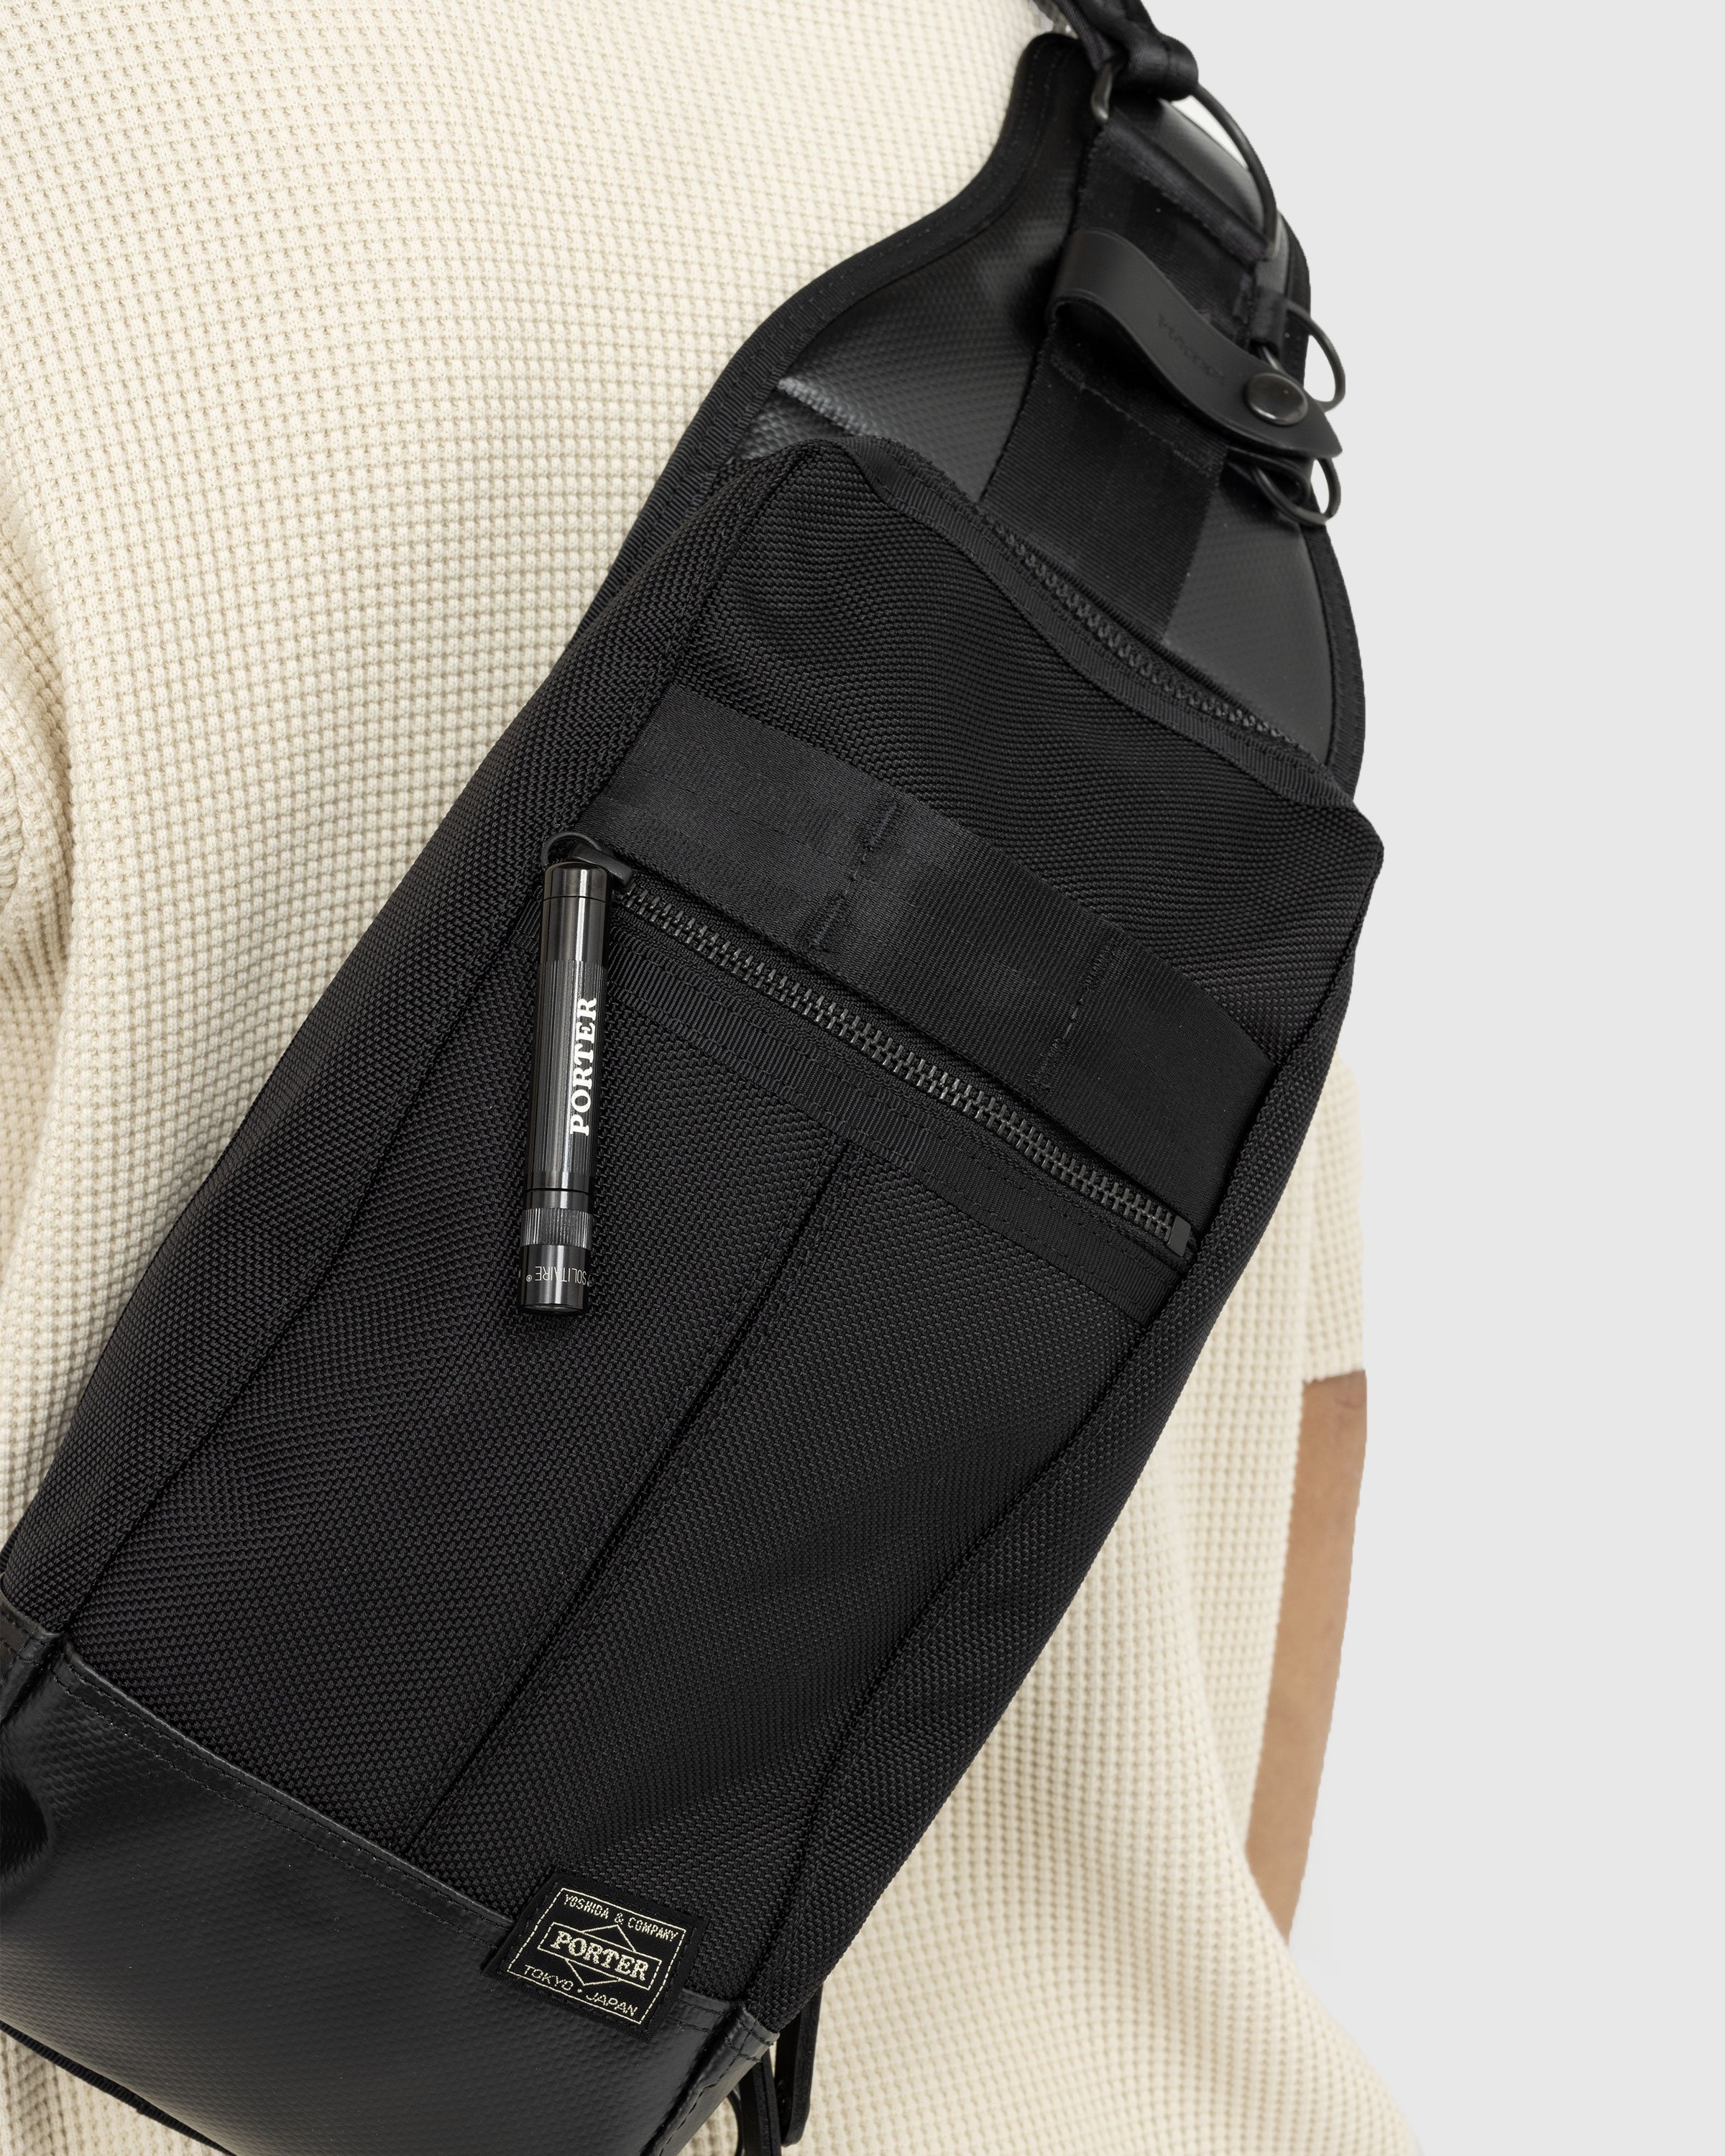 Porter-Yoshida & Co. - Heat Sling Shoulder Bag Black - Accessories - Black - Image 3